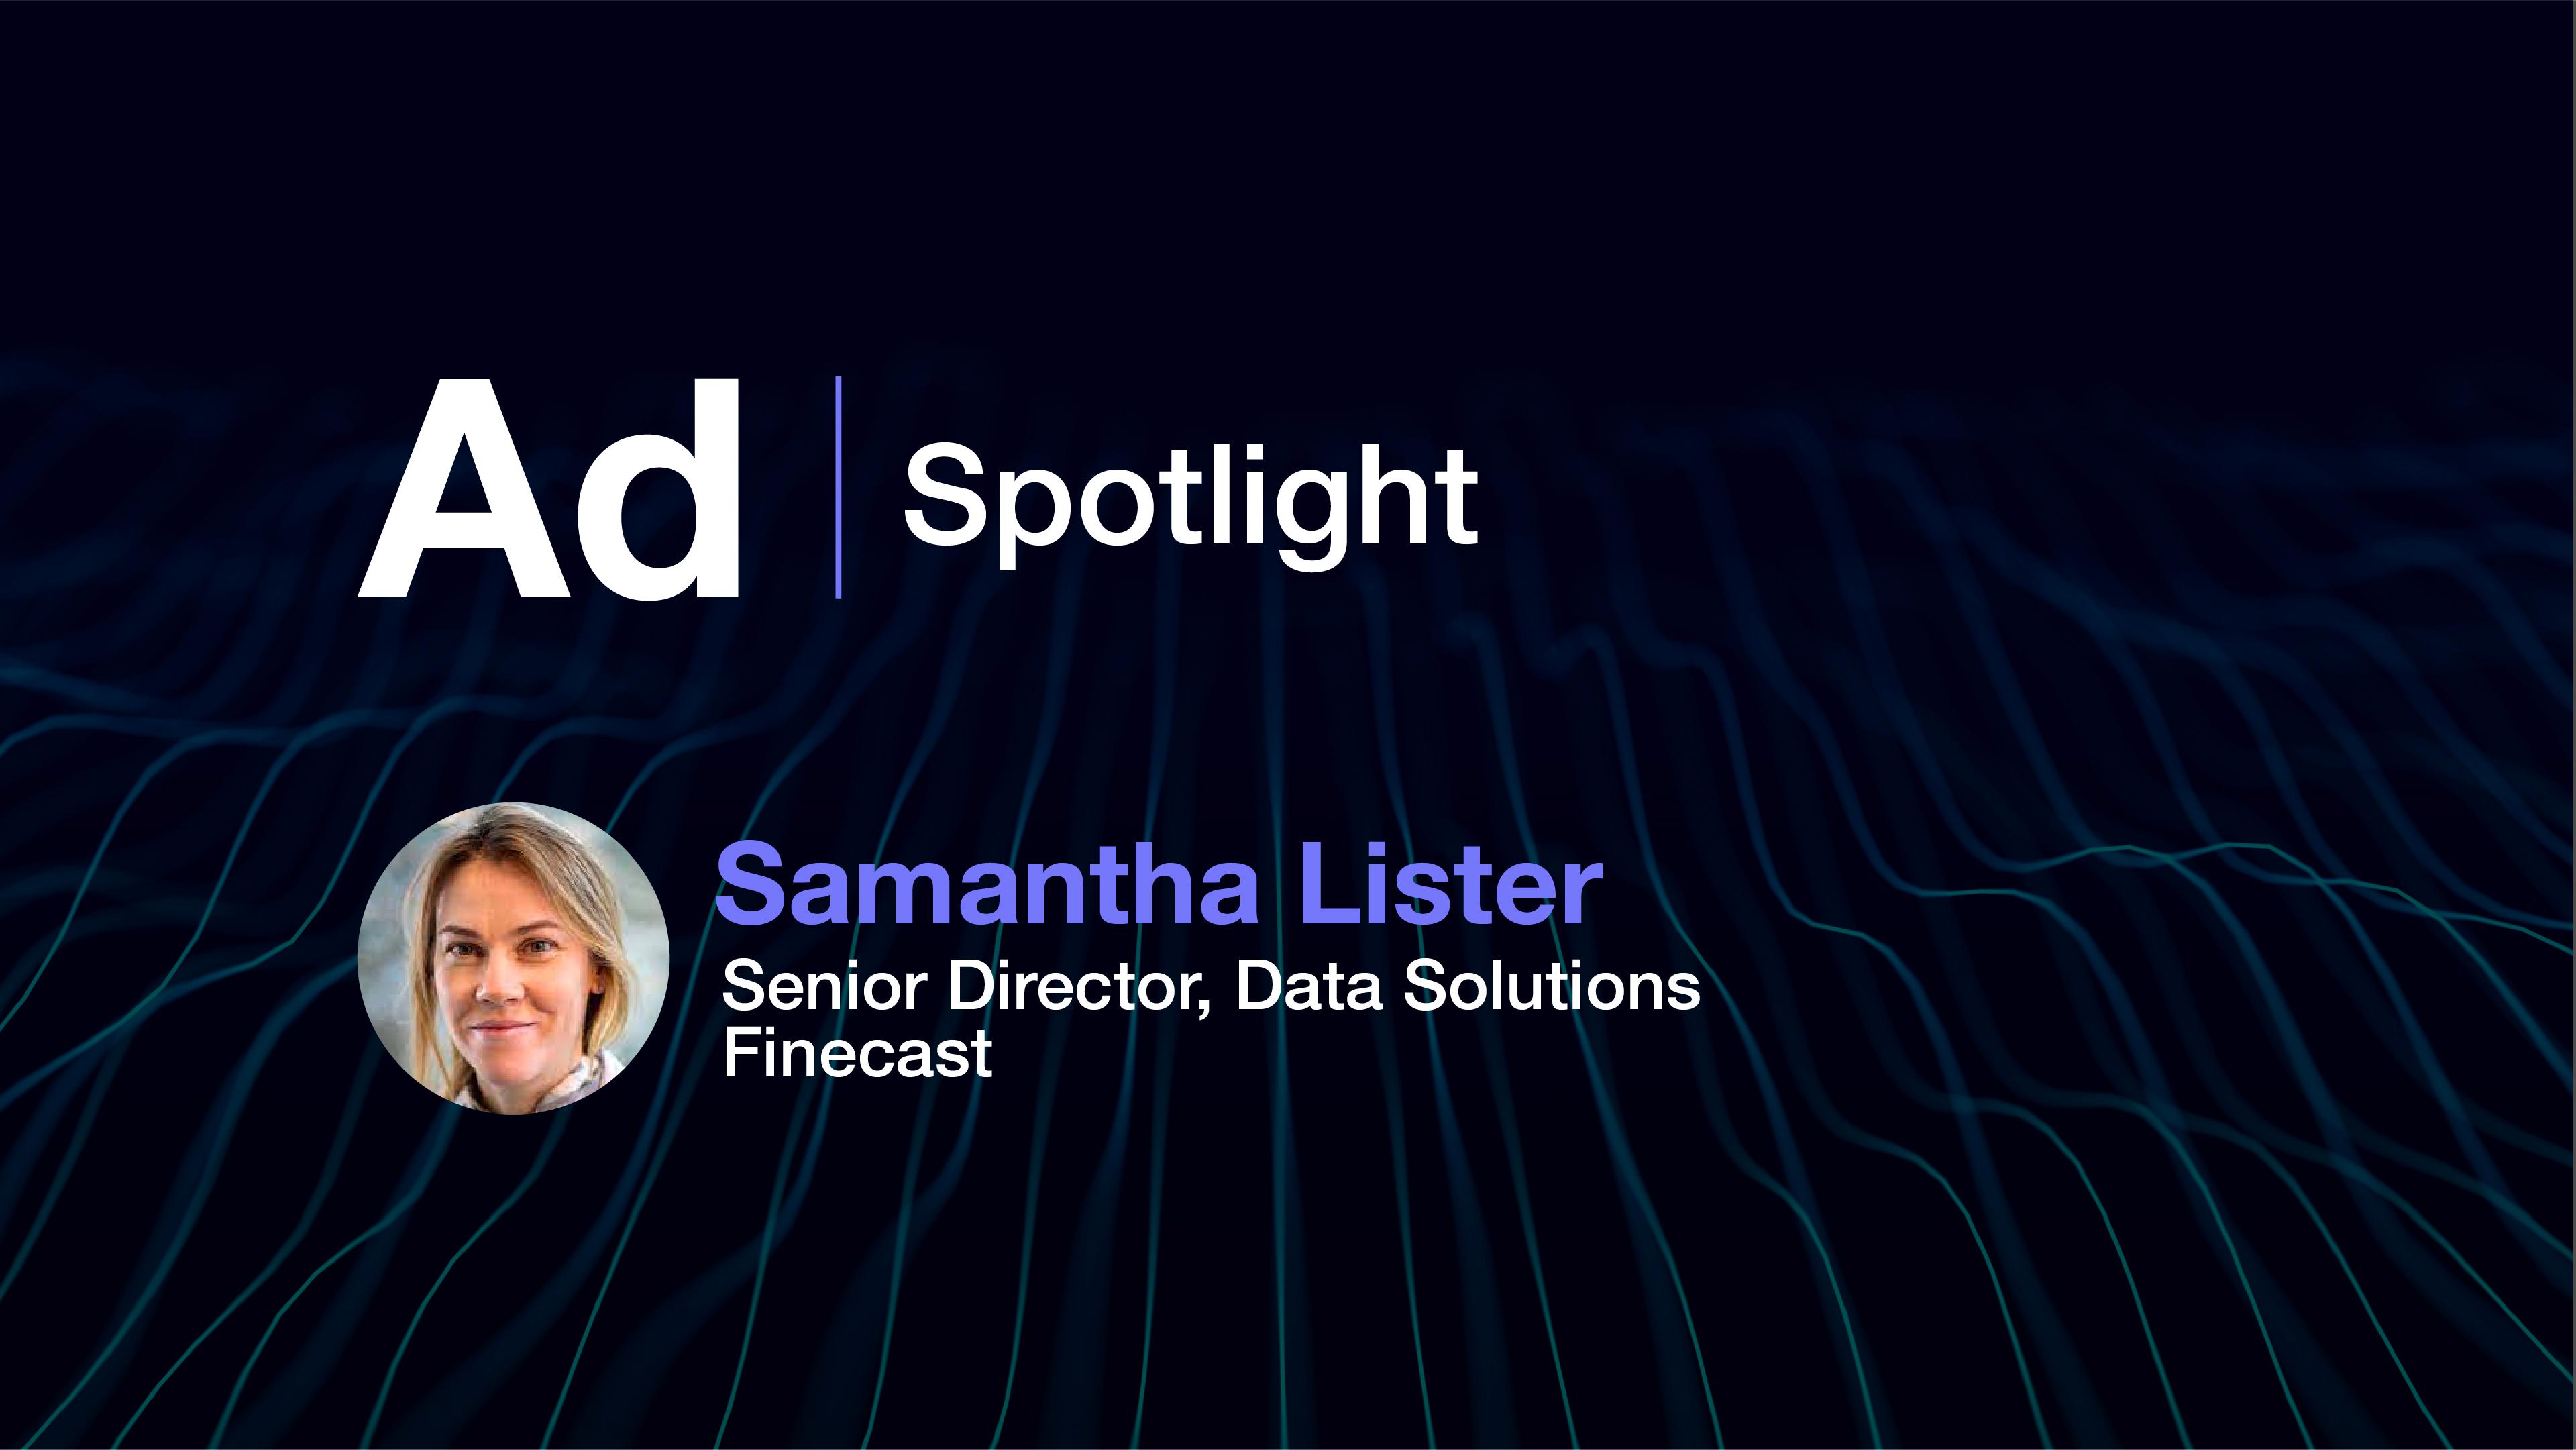 Ad Spotlight: Samantha Lister, Senior Director Data Solutions